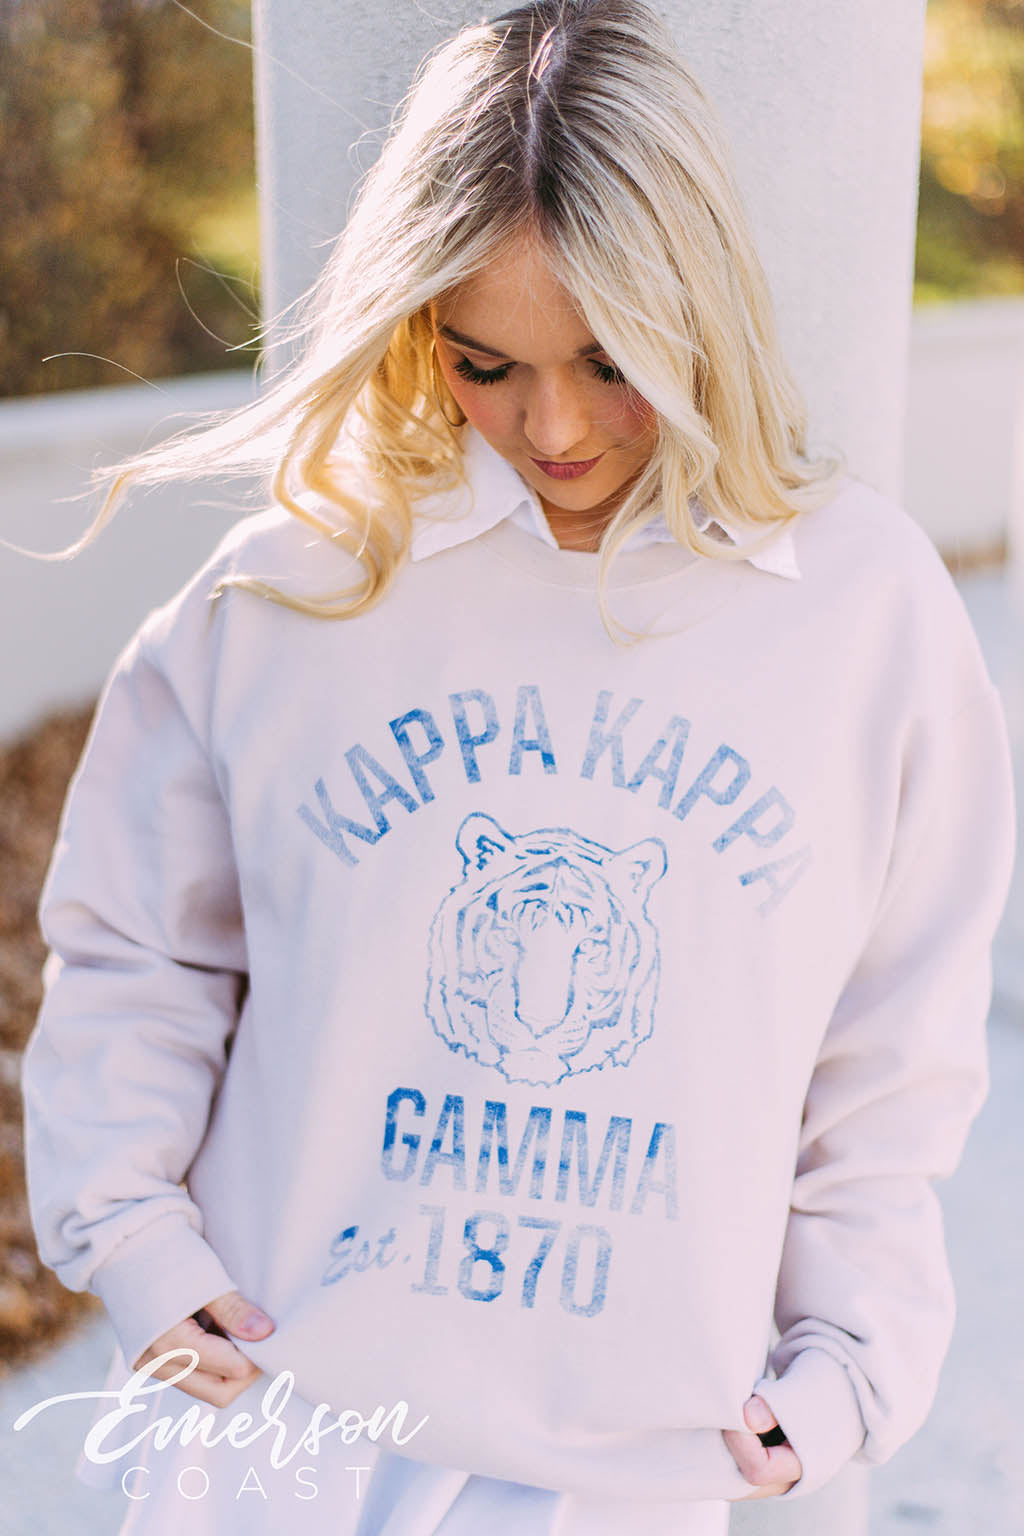 deksel routine Vierde Kappa Kappa Gamma Vintage Collegiate Sweatshirt - Emerson Coast